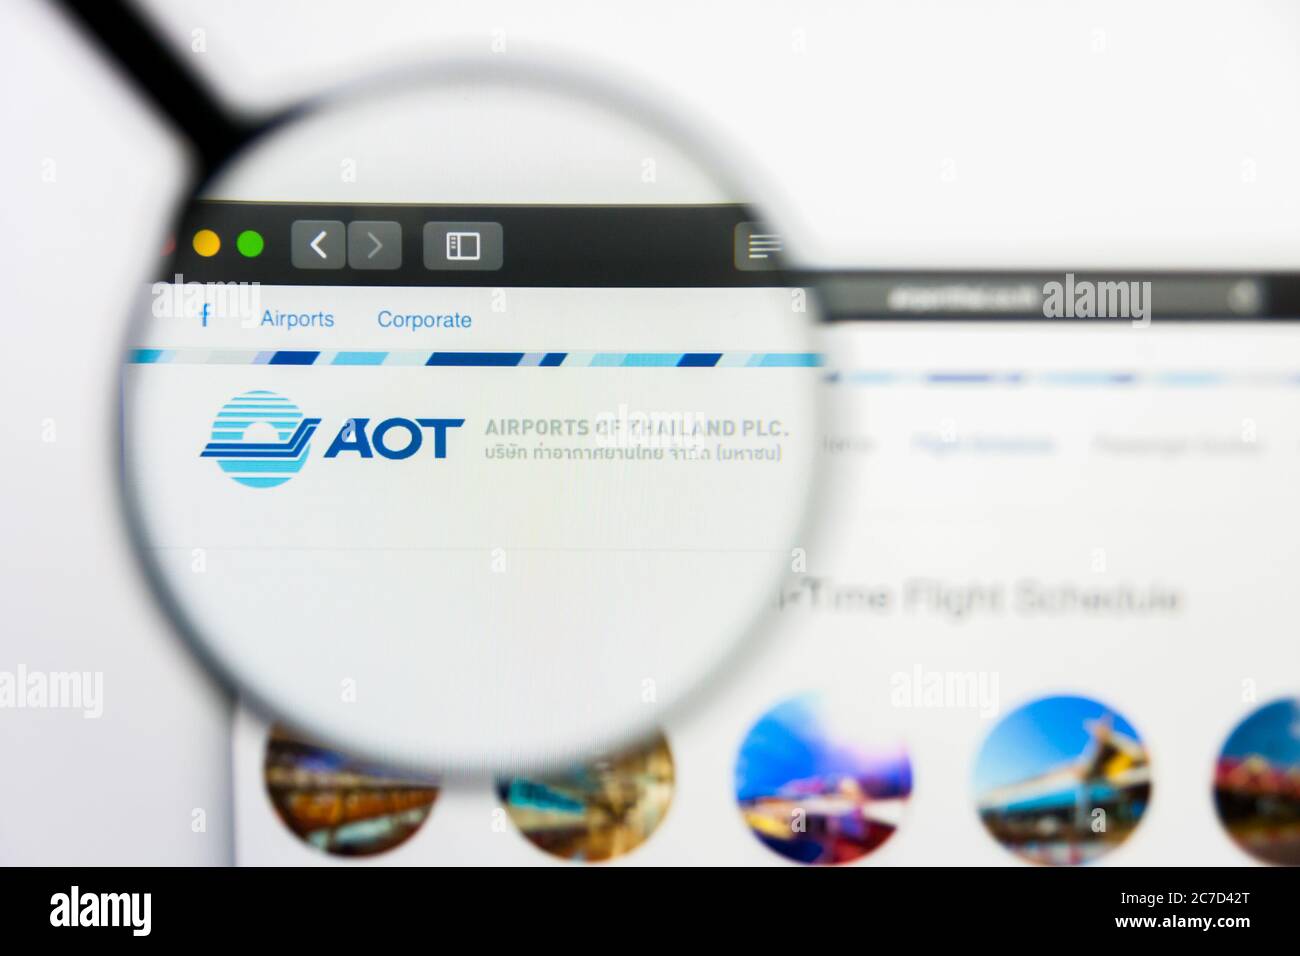 Los Angeles, California, EE.UU. - 25 de marzo de 2019: Editorial ilustrativa de la página web de Airports of Thailand. Aeropuertos de Tailandia logotipo visible en Foto de stock